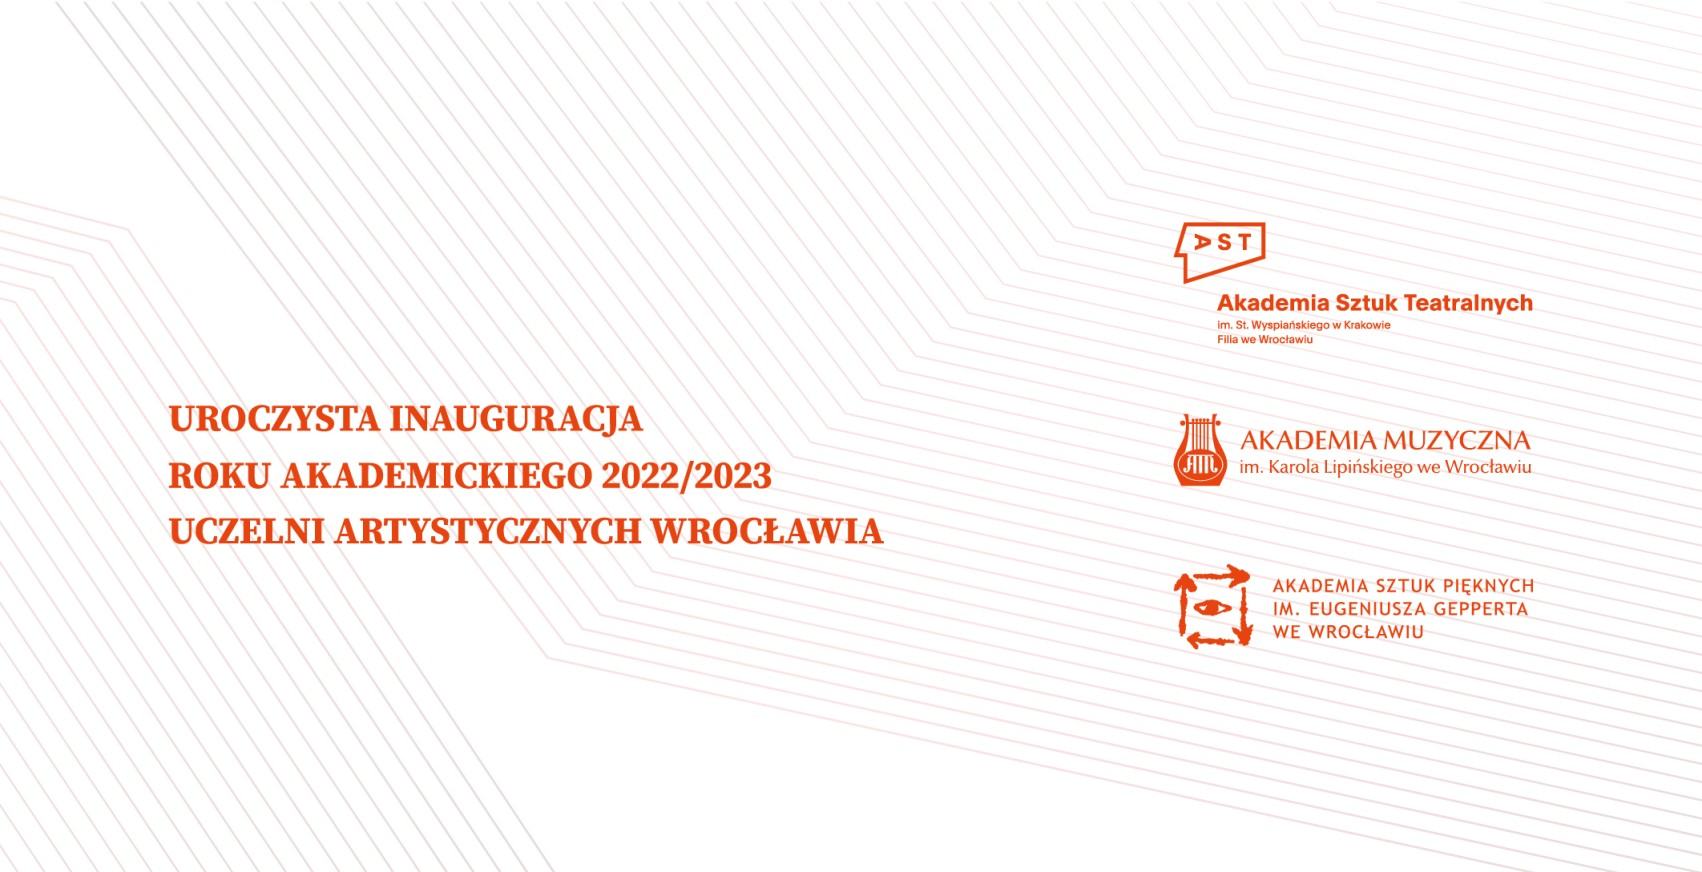 Fragment zaproszenia na Uroczystą inaugurację roku akademickiego 2022/23 Uczelni Artystycznych Wrocławia